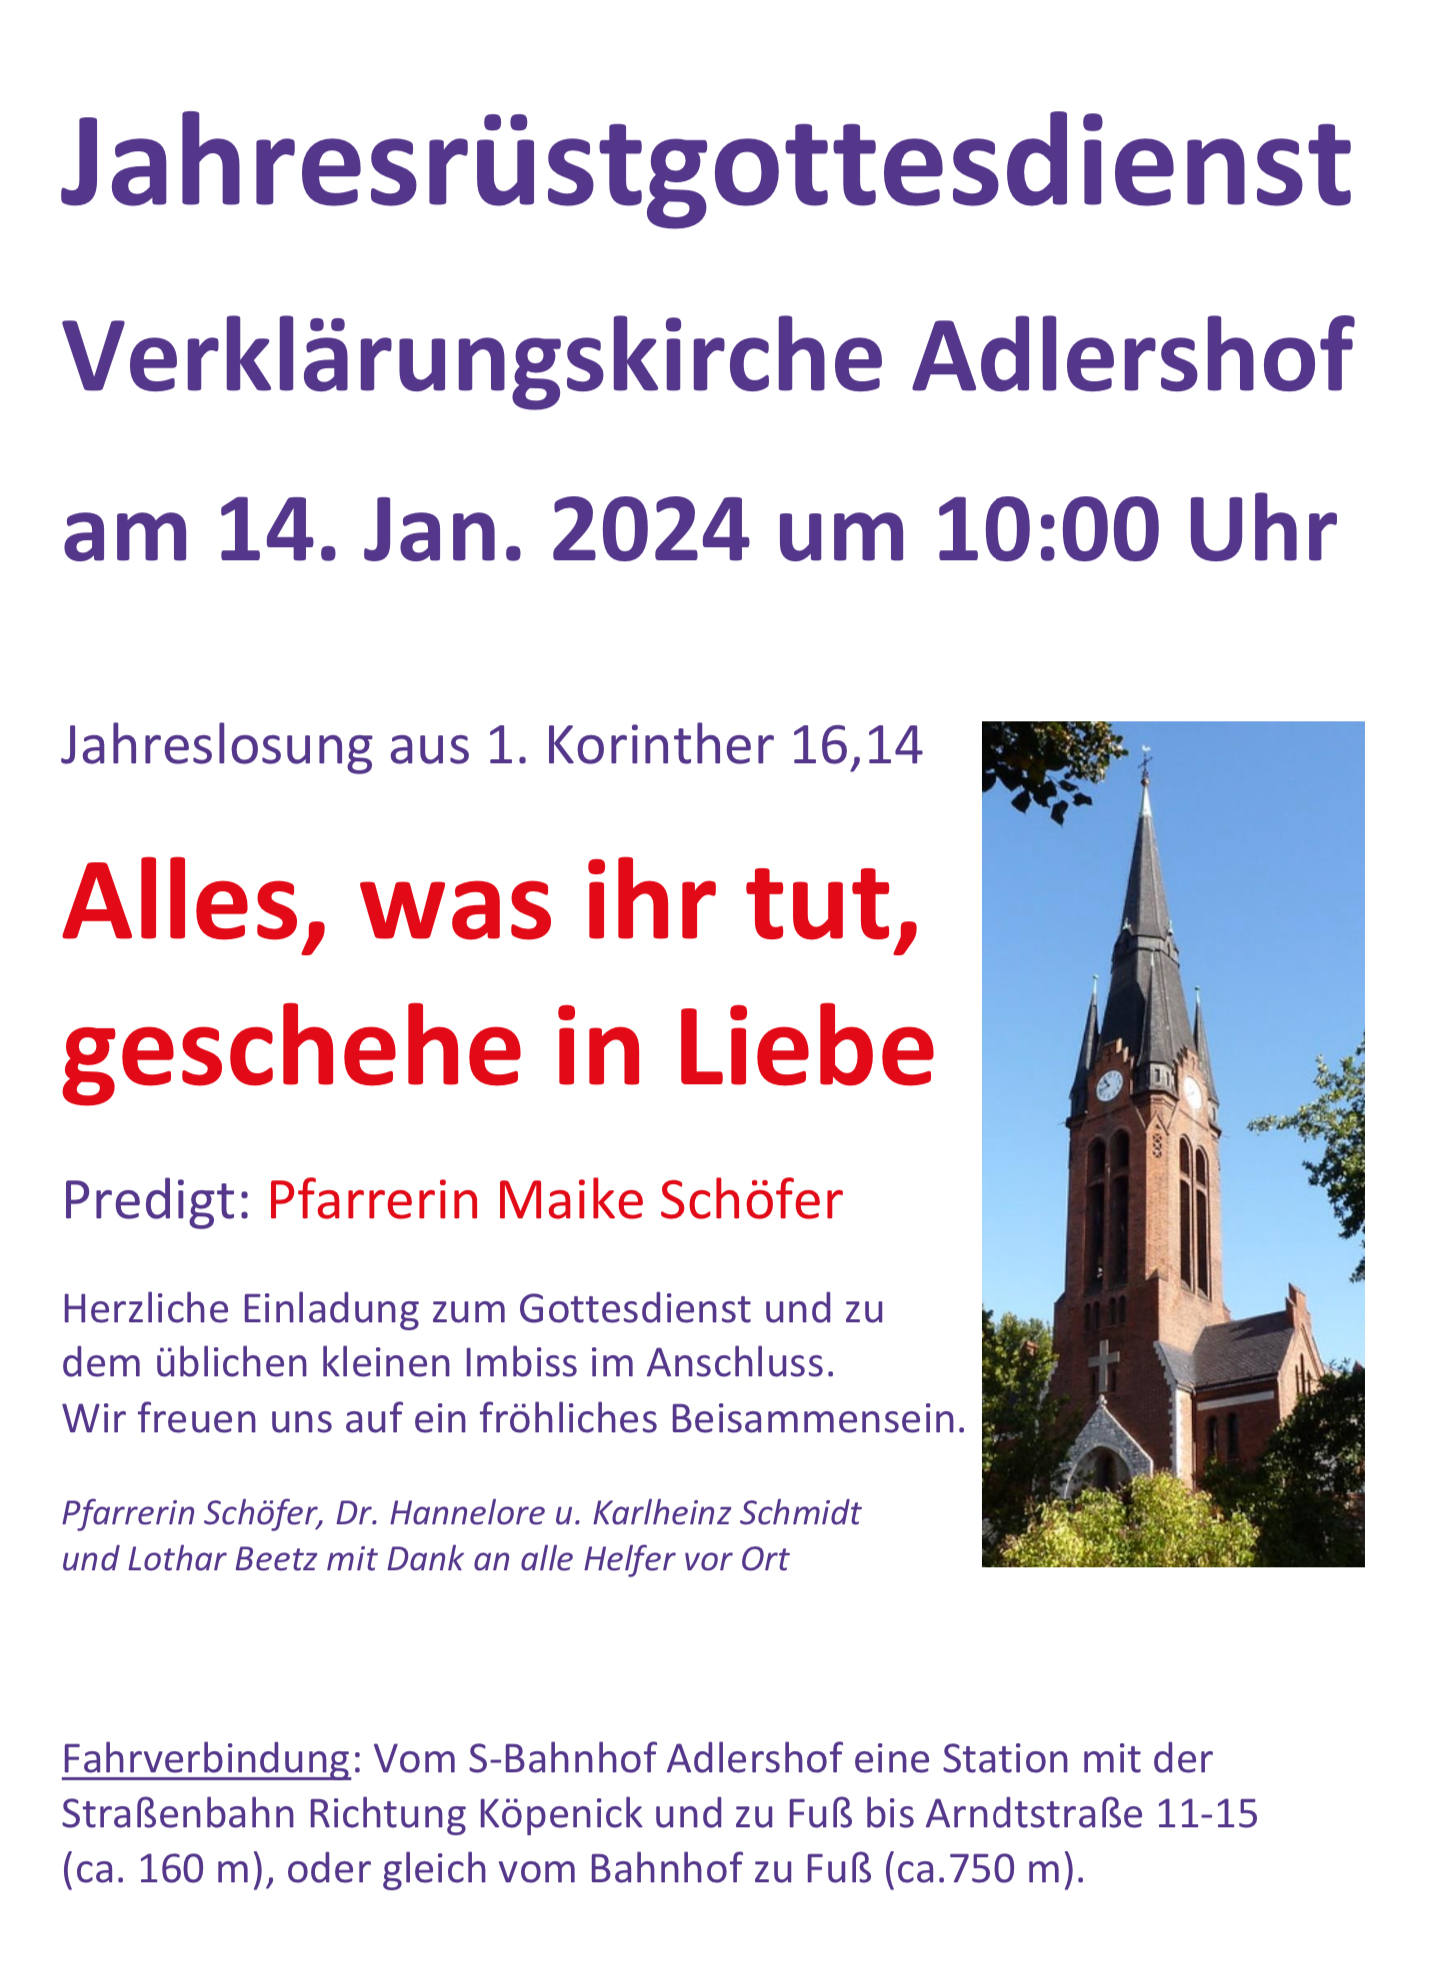 Einladung Jahresrüstgottesdienst 2024 am 14.1.2024 um 10 Uhr Verklärungskirche Berlin-Adlershof